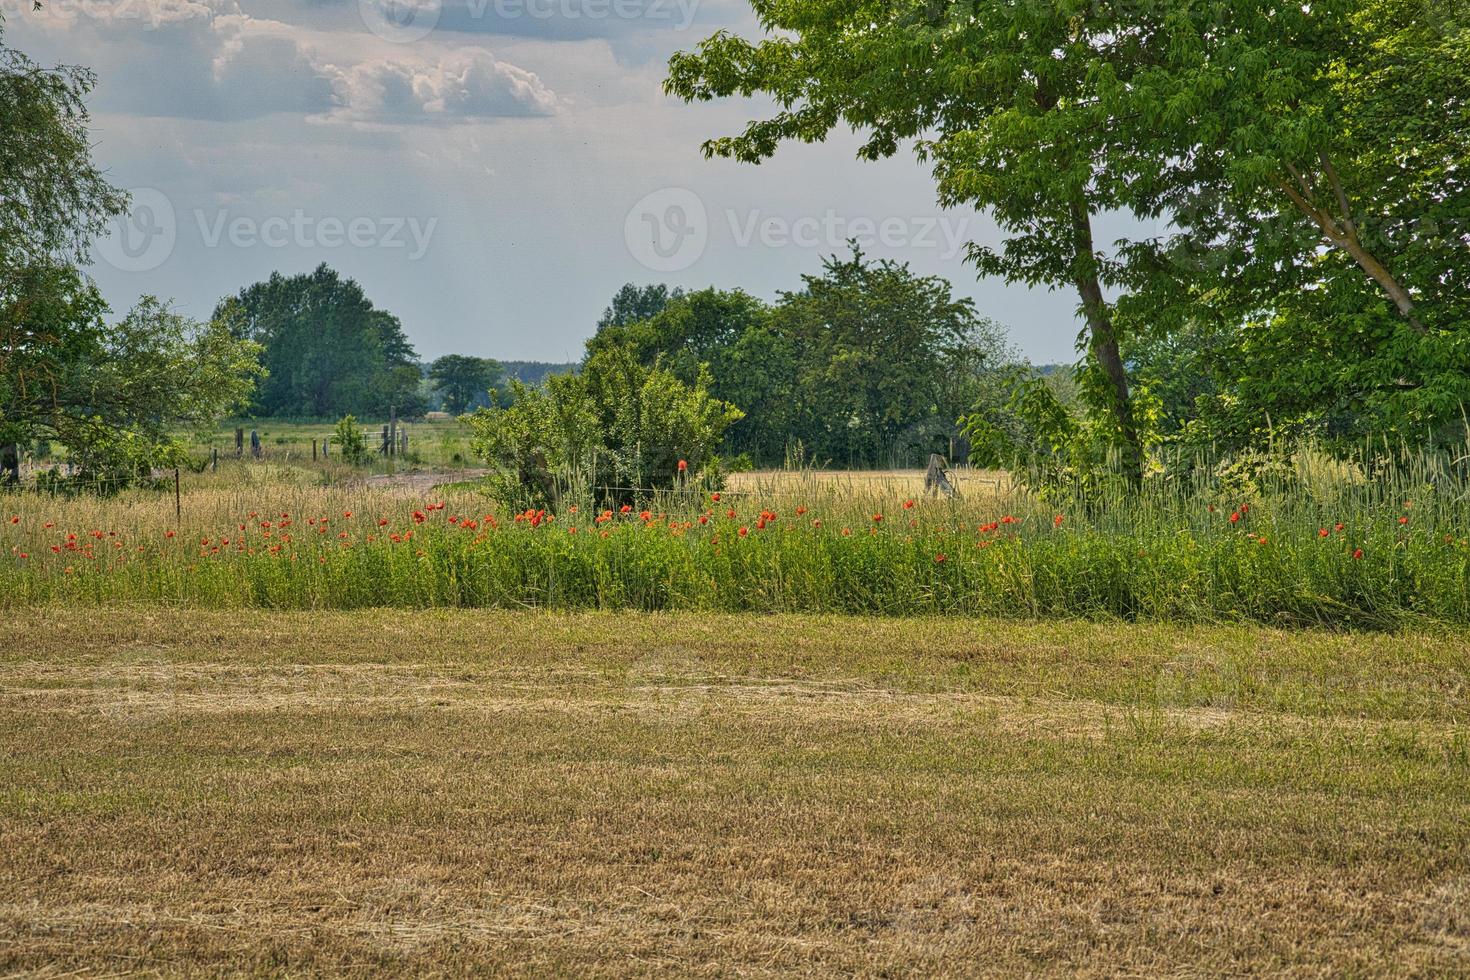 coquelicots au bord d'un champ de maïs récolté. fleurs rouges, arbres et herbe. photo